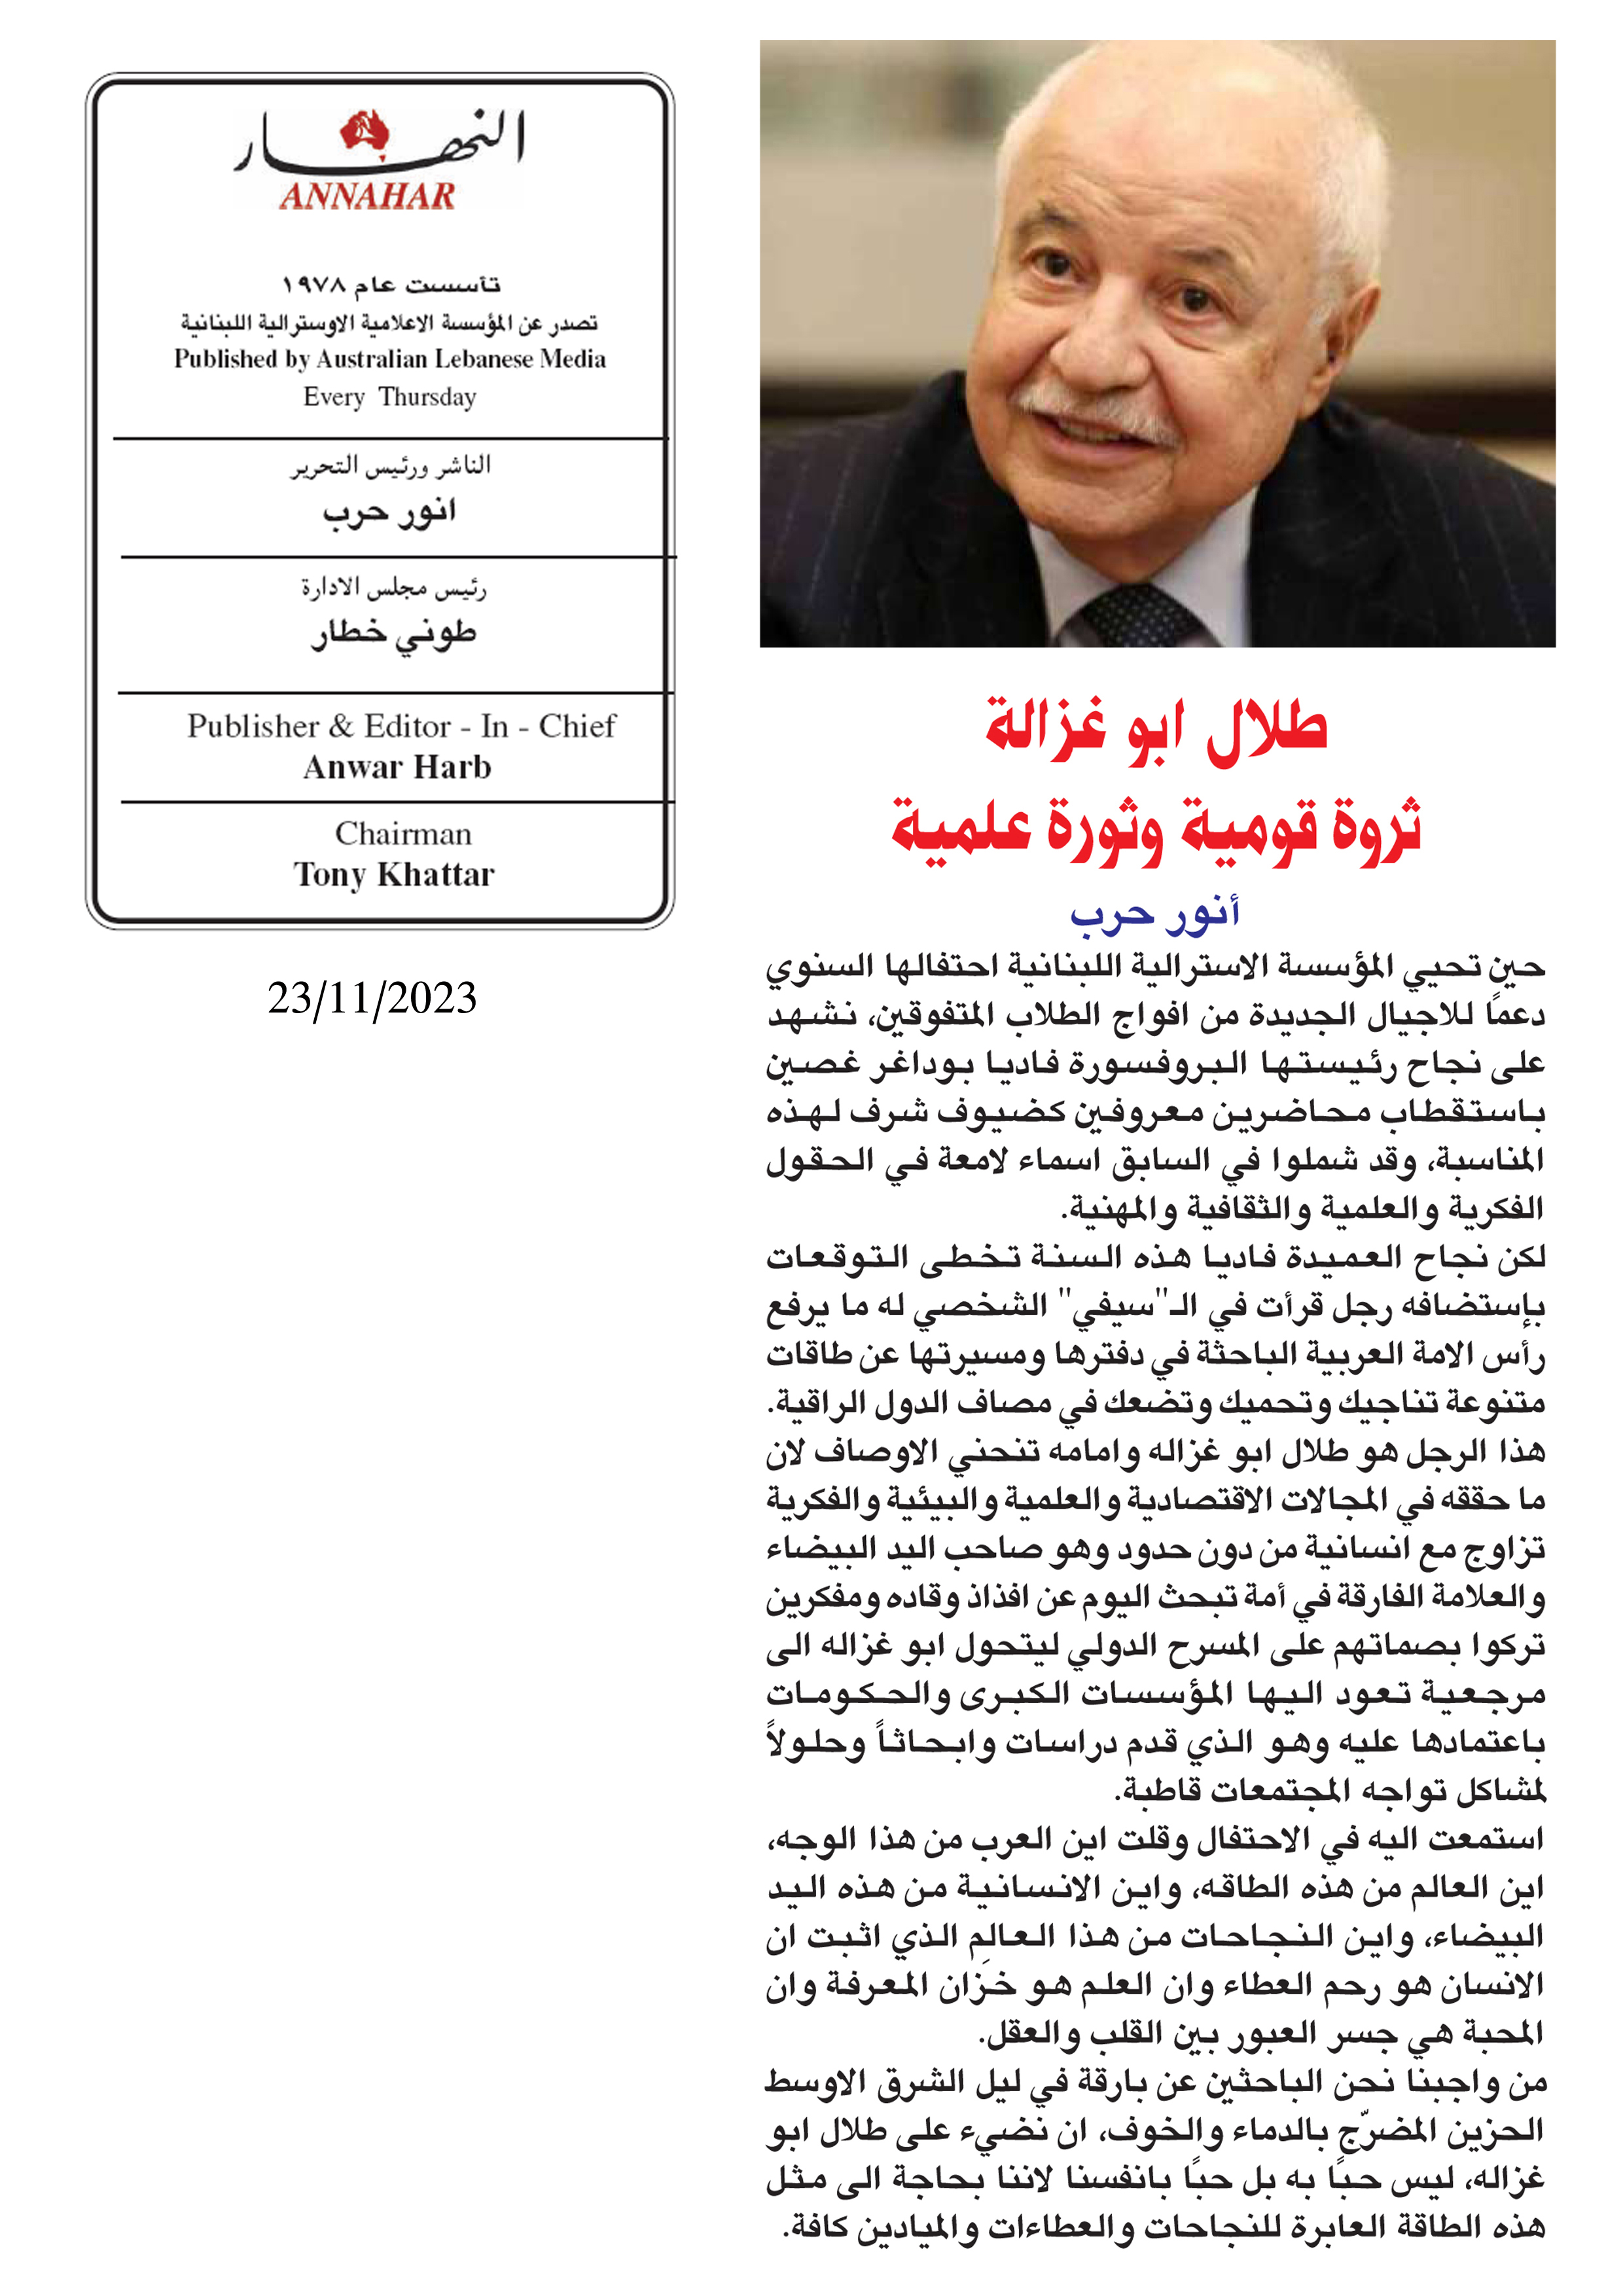 طلال أبوغزاله ثروة قومية وثورة علمية